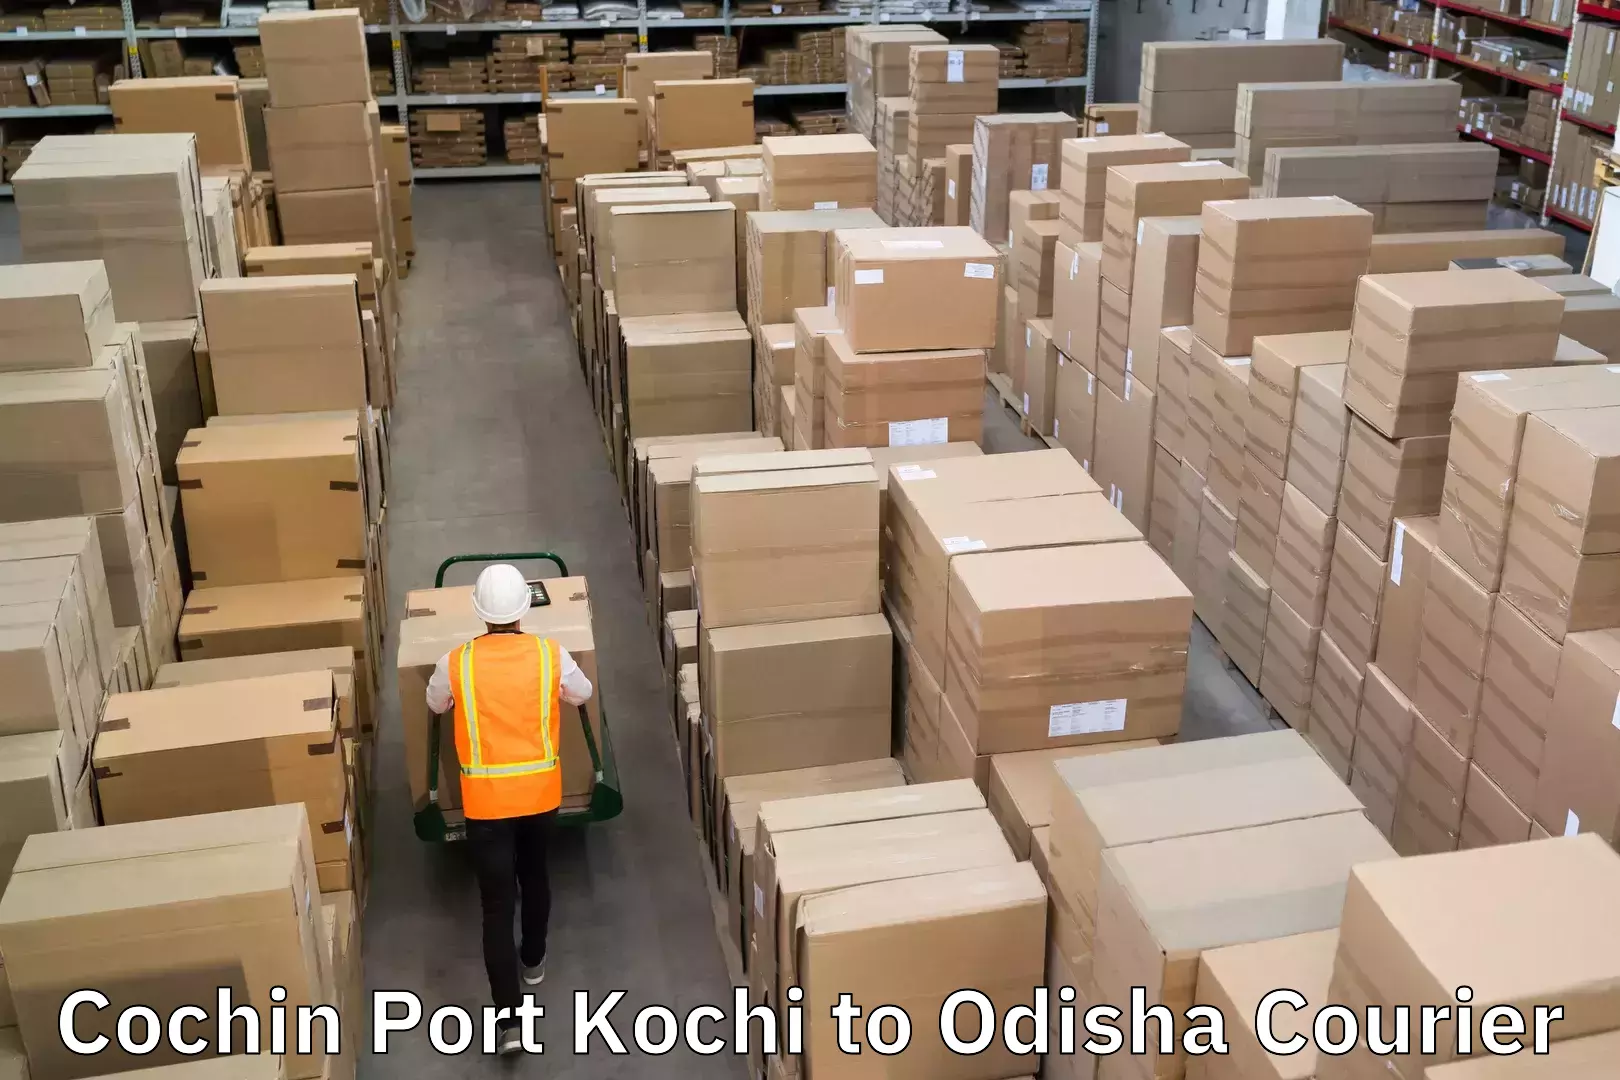 High-capacity parcel service Cochin Port Kochi to Odisha